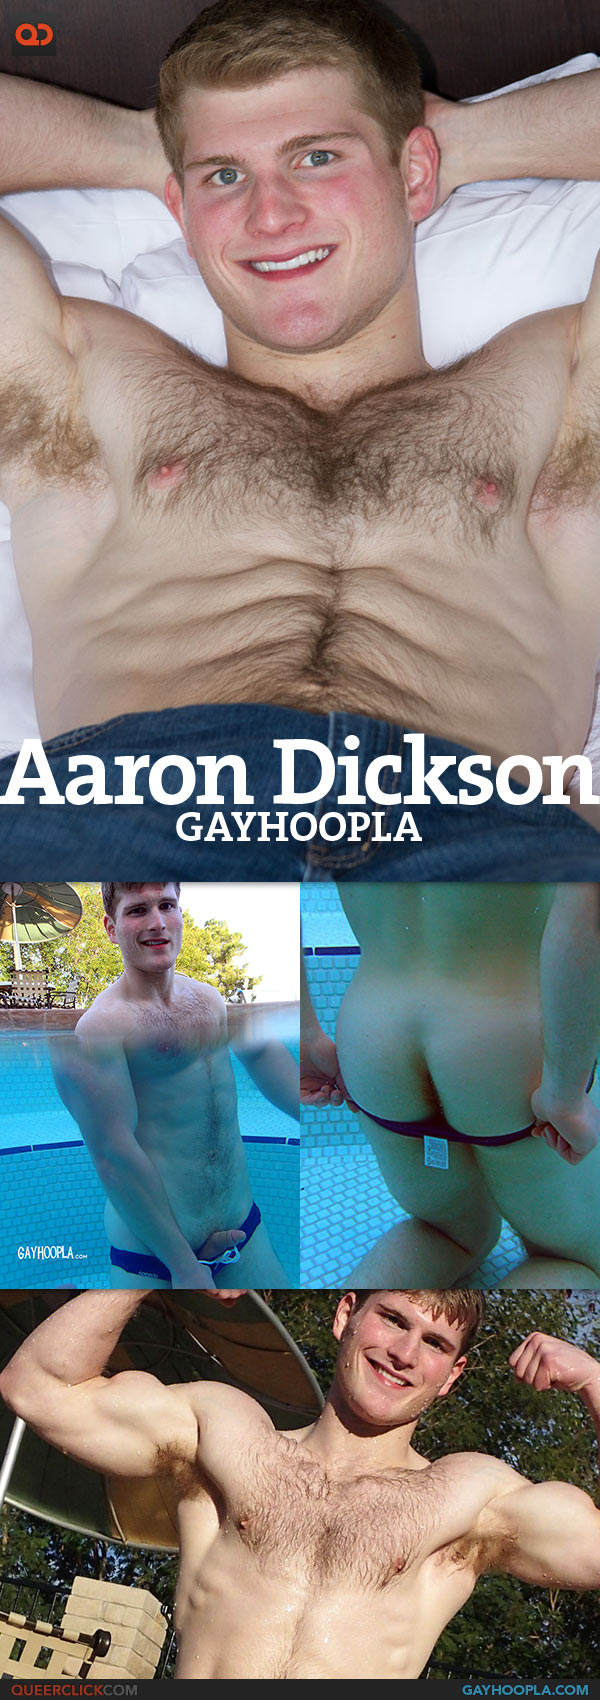 Gayhoopla: Aaron Dickson